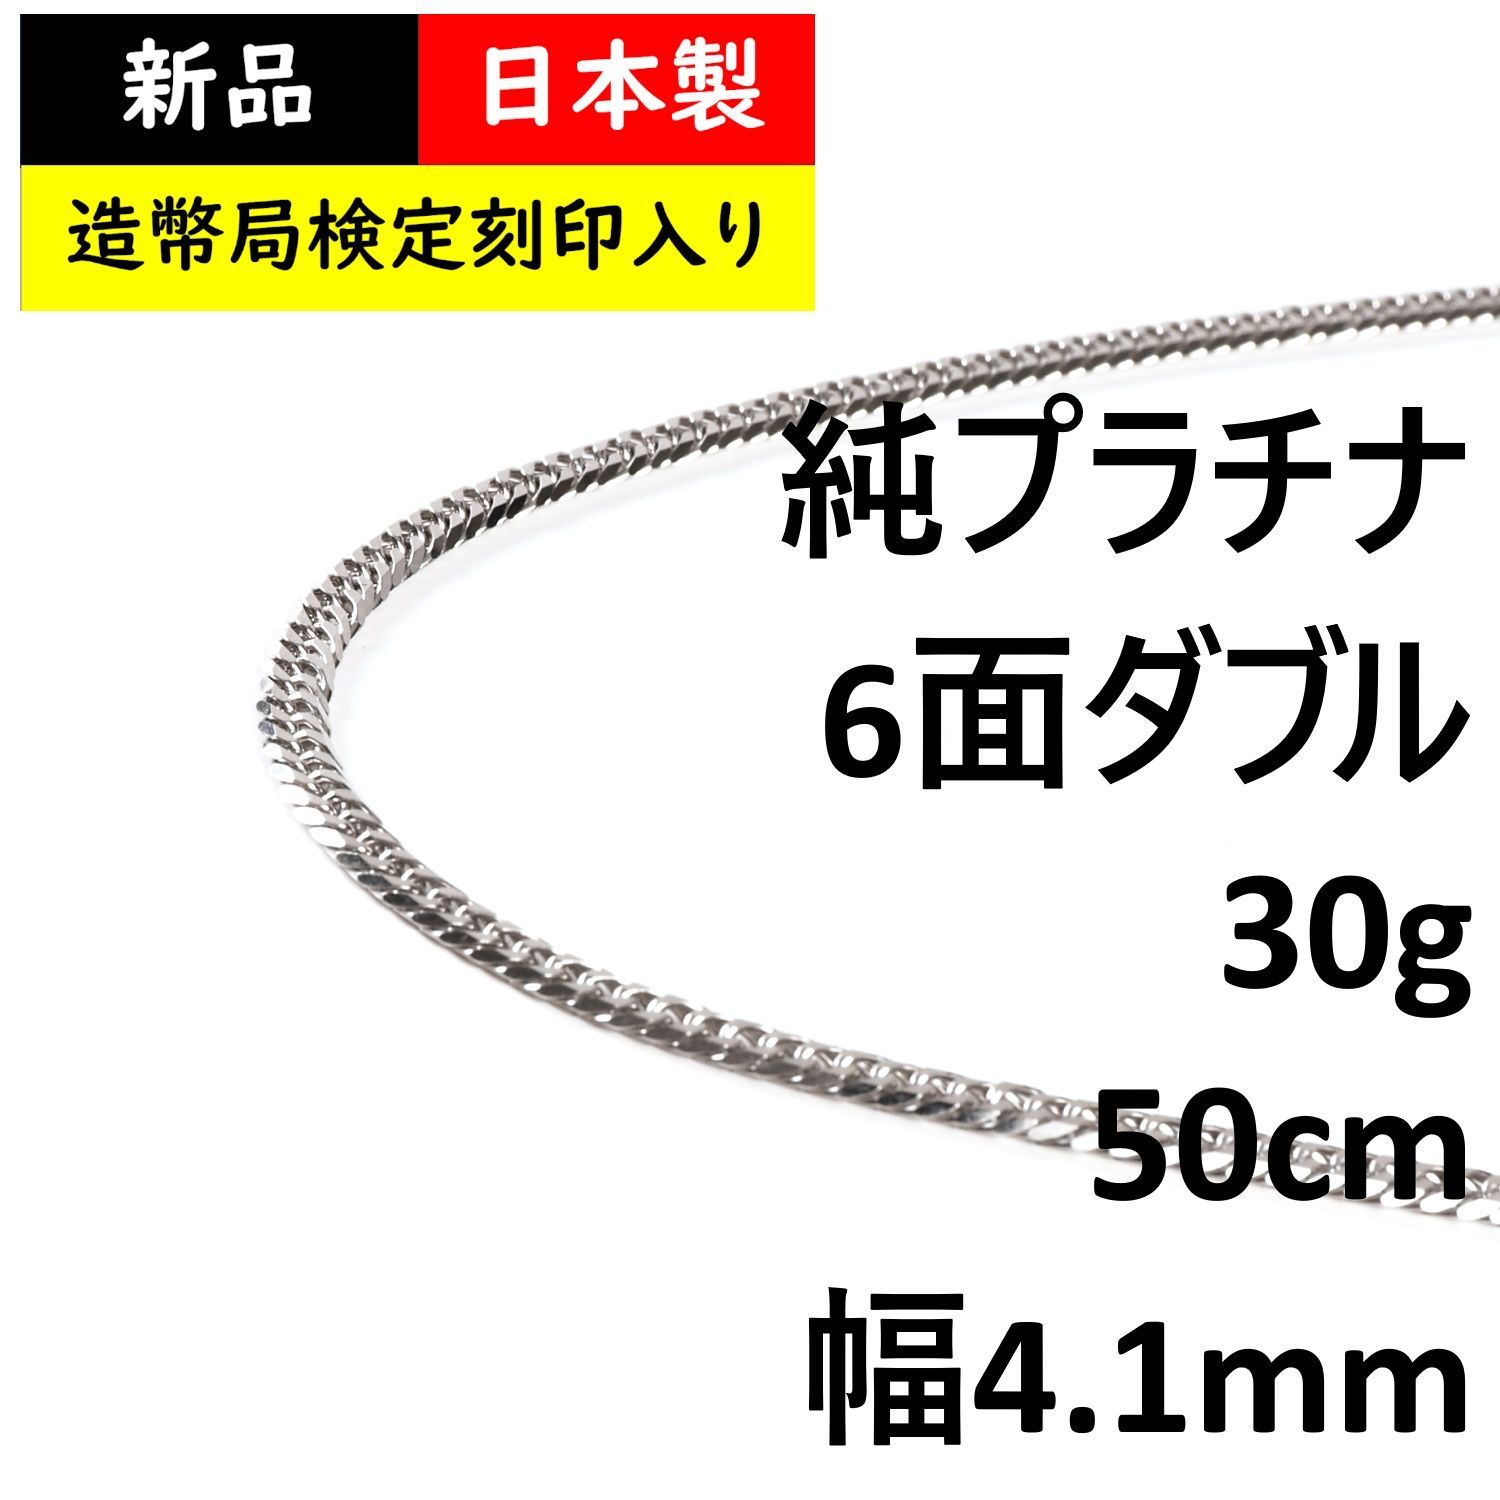 プラチナ 喜平 ネックレス(50cm、30g) - ネックレス